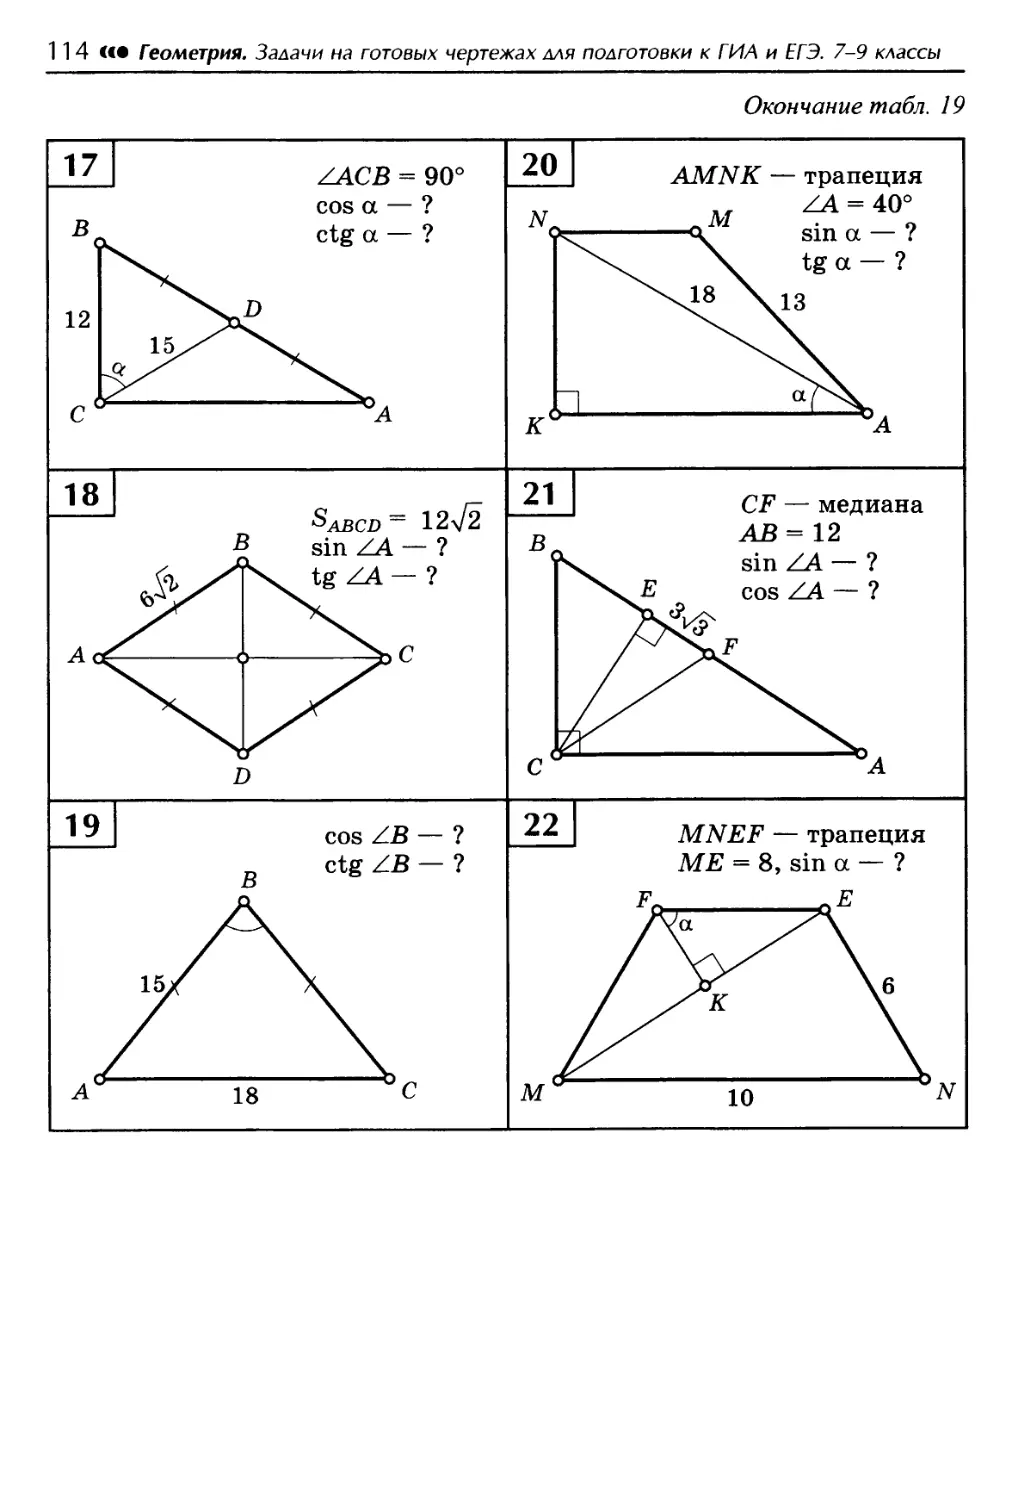 Готовые чертежи геометрия 9 класс. Геометрия чертеж задачи на готовых чертежах 8 класс Атанасян. Задачи на готовых чертежах 7 класс геометрия Атанасян. Балаян 7-9 класс геометрия задачи на готовых чертежах таблица 4. Задачи по геометрии на готовых чертежах 7-9 классы Атанасян.